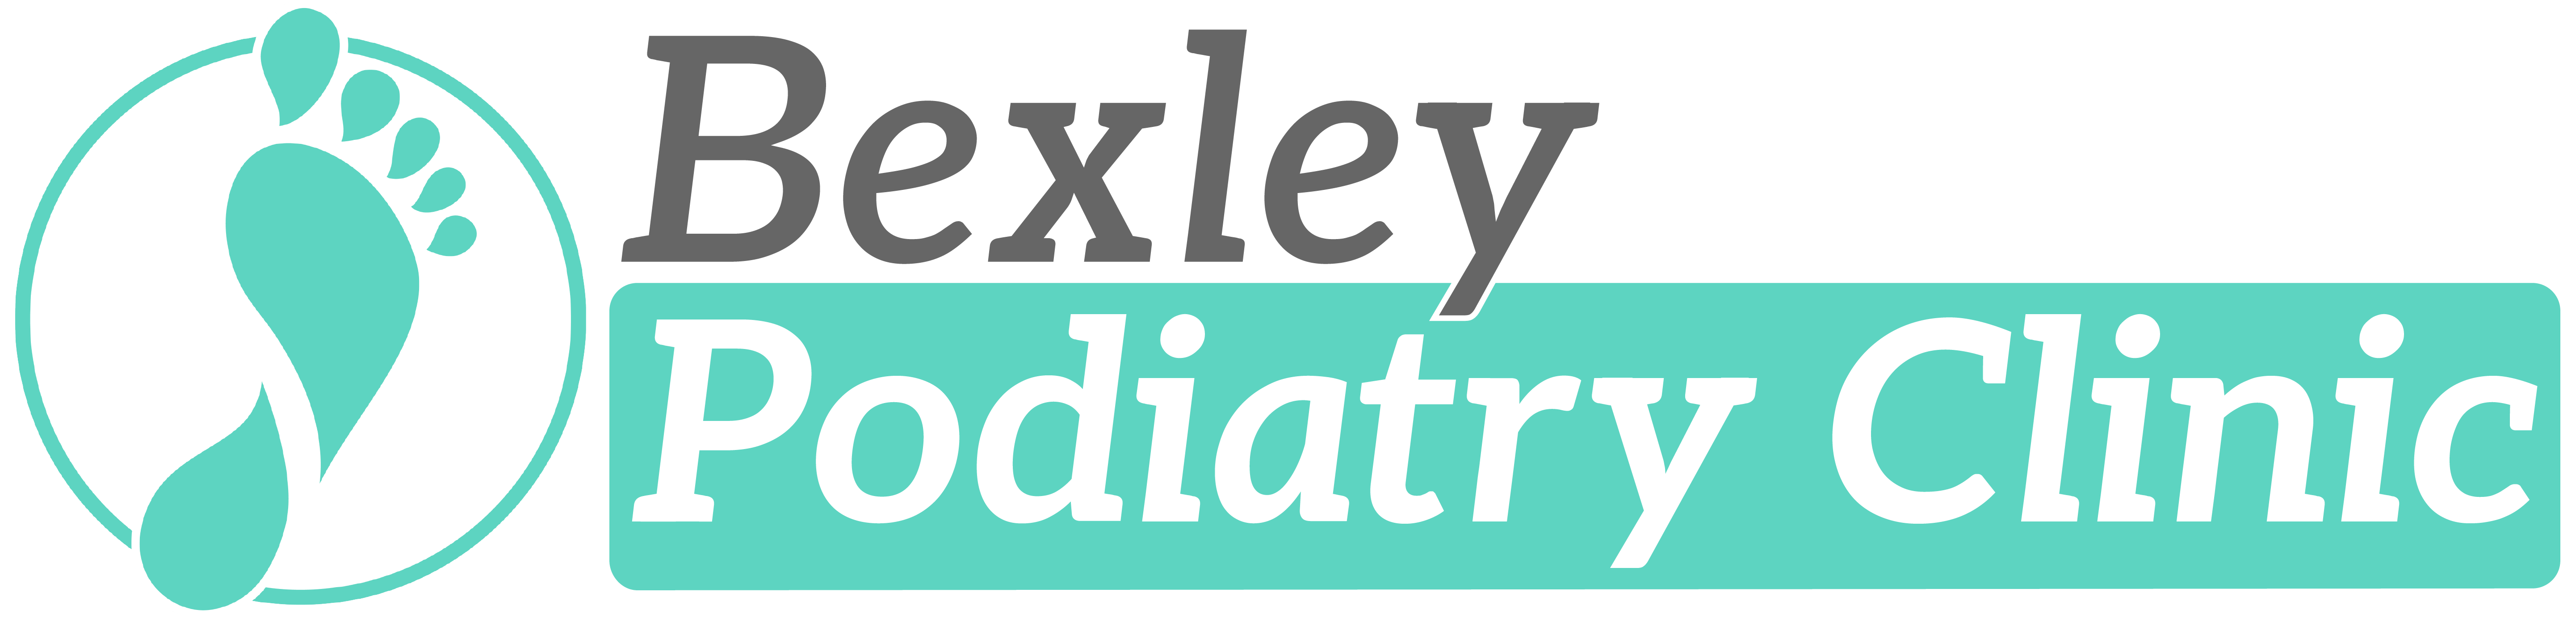 Bexley Podiatry Clinic